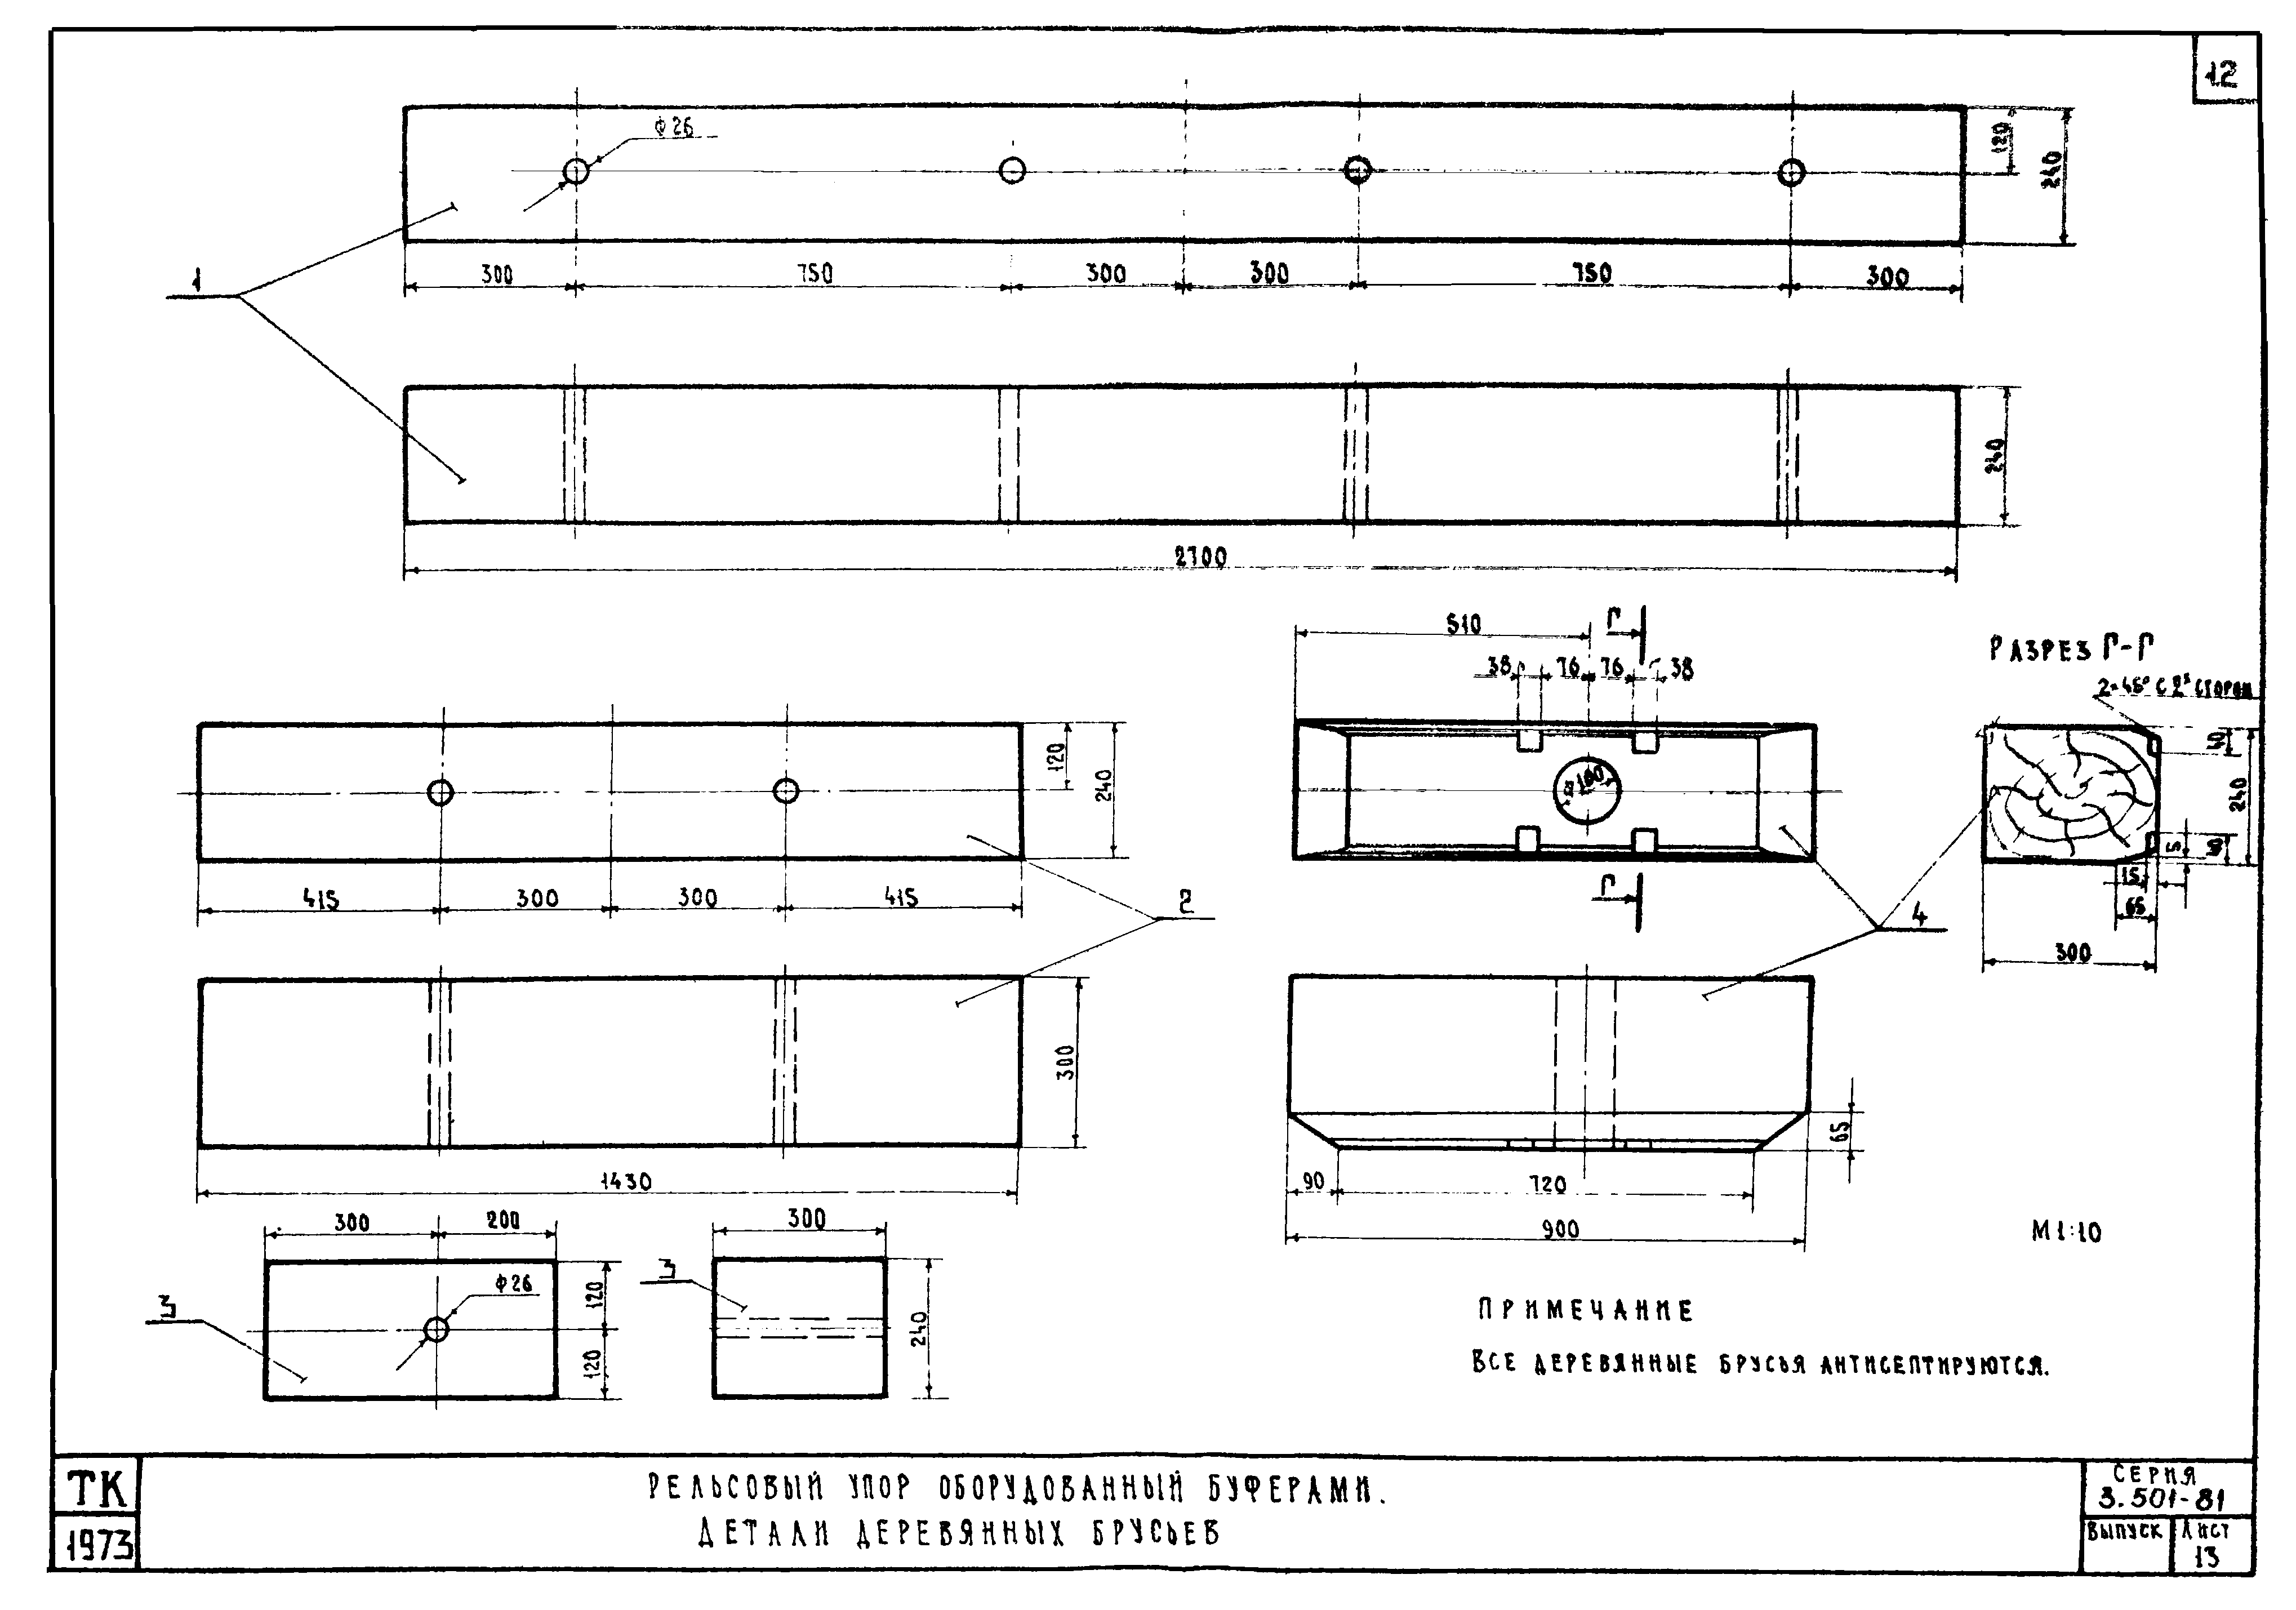 Серия 3.501-81 Конструкции внутрицеховых упоров на железнодорожных путях промышленных предприятий. Лист 13.